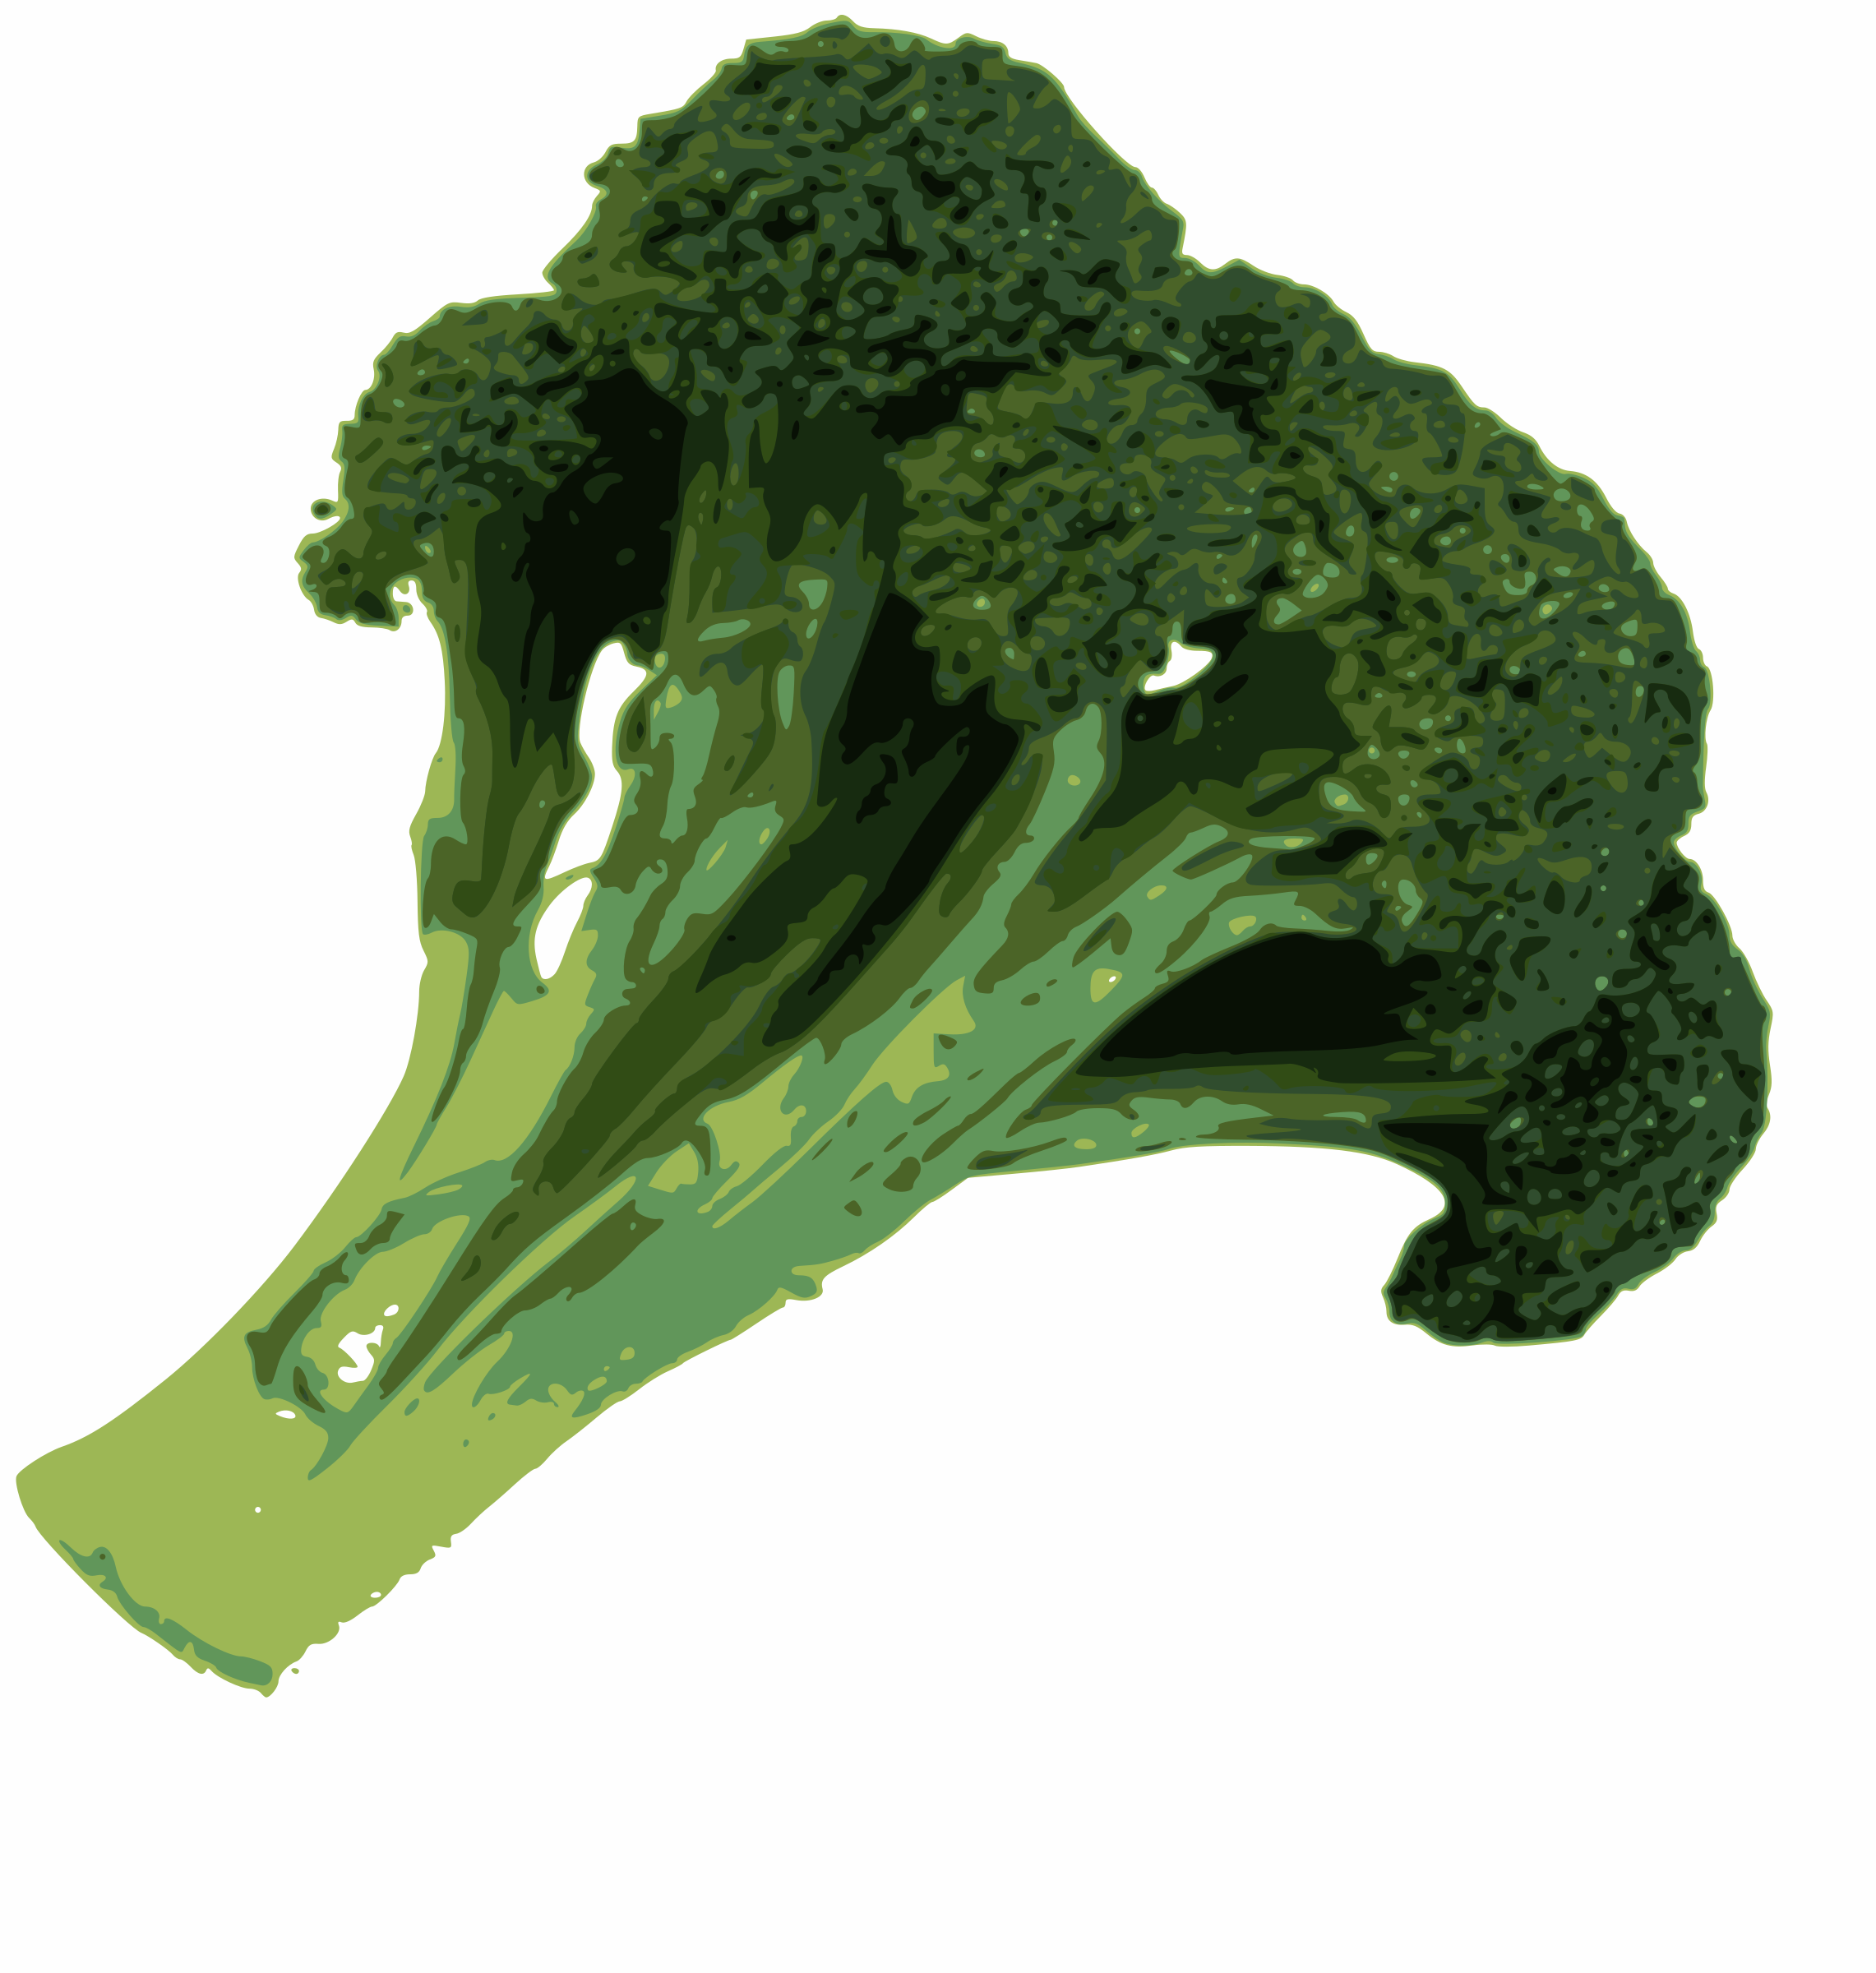 broccoli clipart clip art